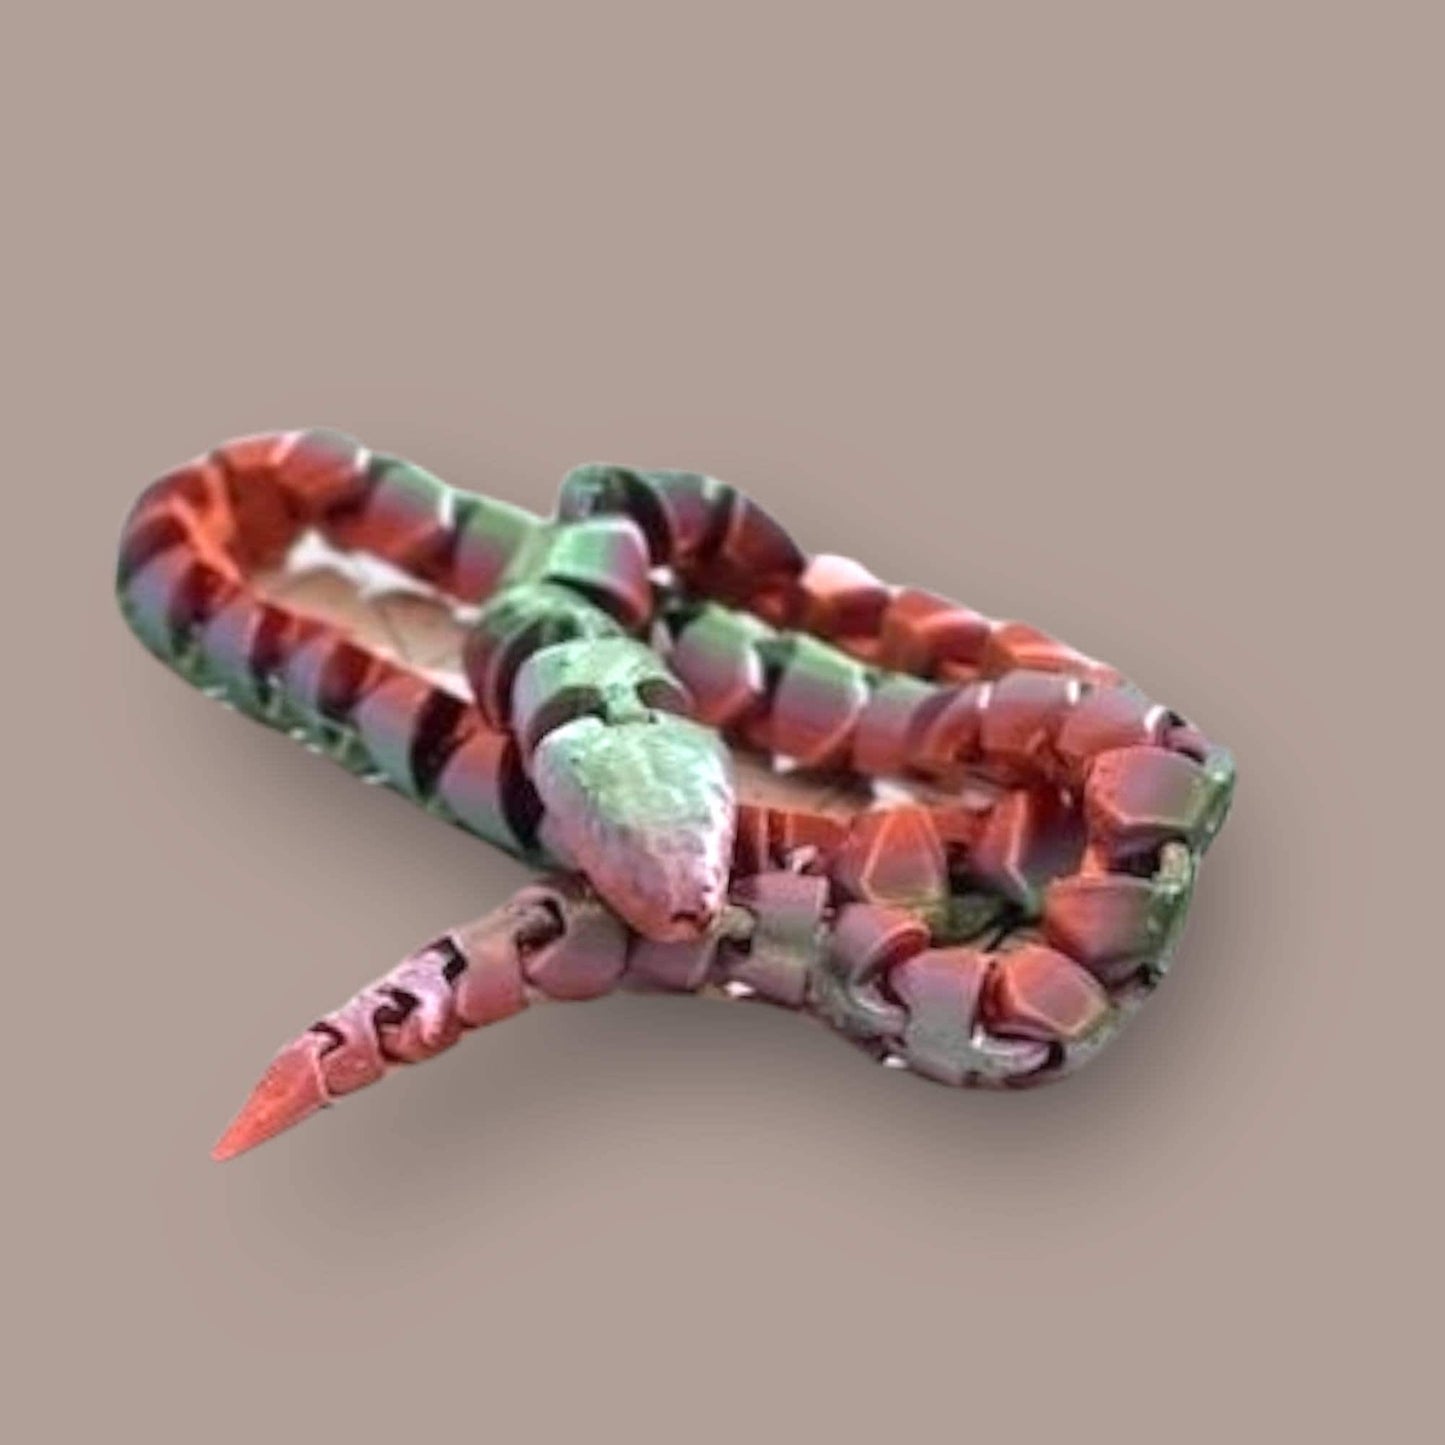 Snake, 3d print, 3d snake, flexible snake, fidget toy, articulated snake, flexi snake, gift, stocking stuffer, glow in the dark, Rainbow